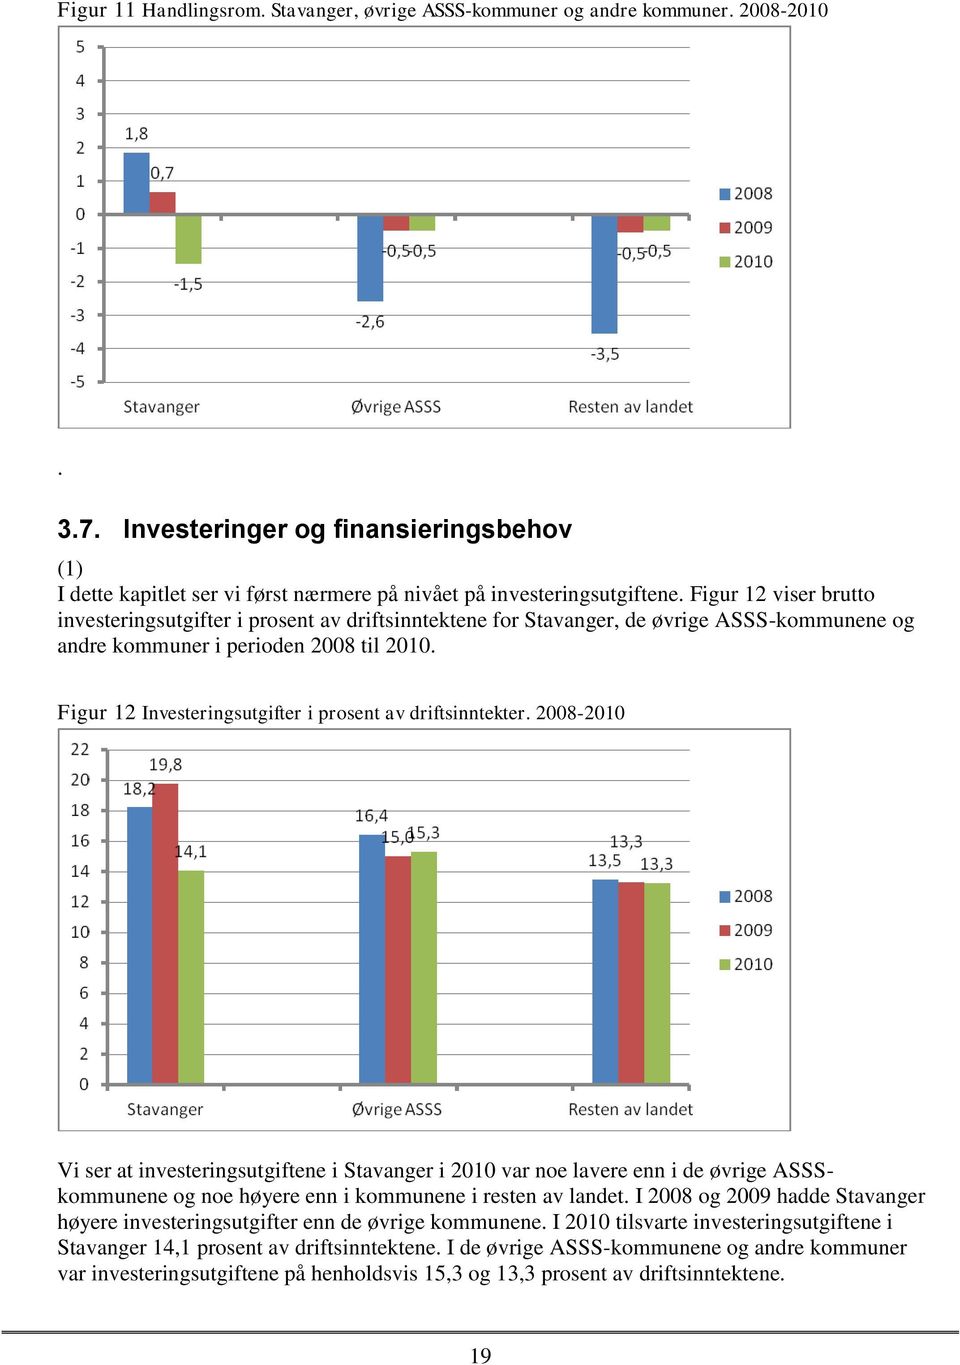 Figur 12 viser brutto investeringsutgifter i prosent av driftsinntektene for Stavanger, de øvrige ASSS-kommunene og andre kommuner i perioden 2008 til 2010.